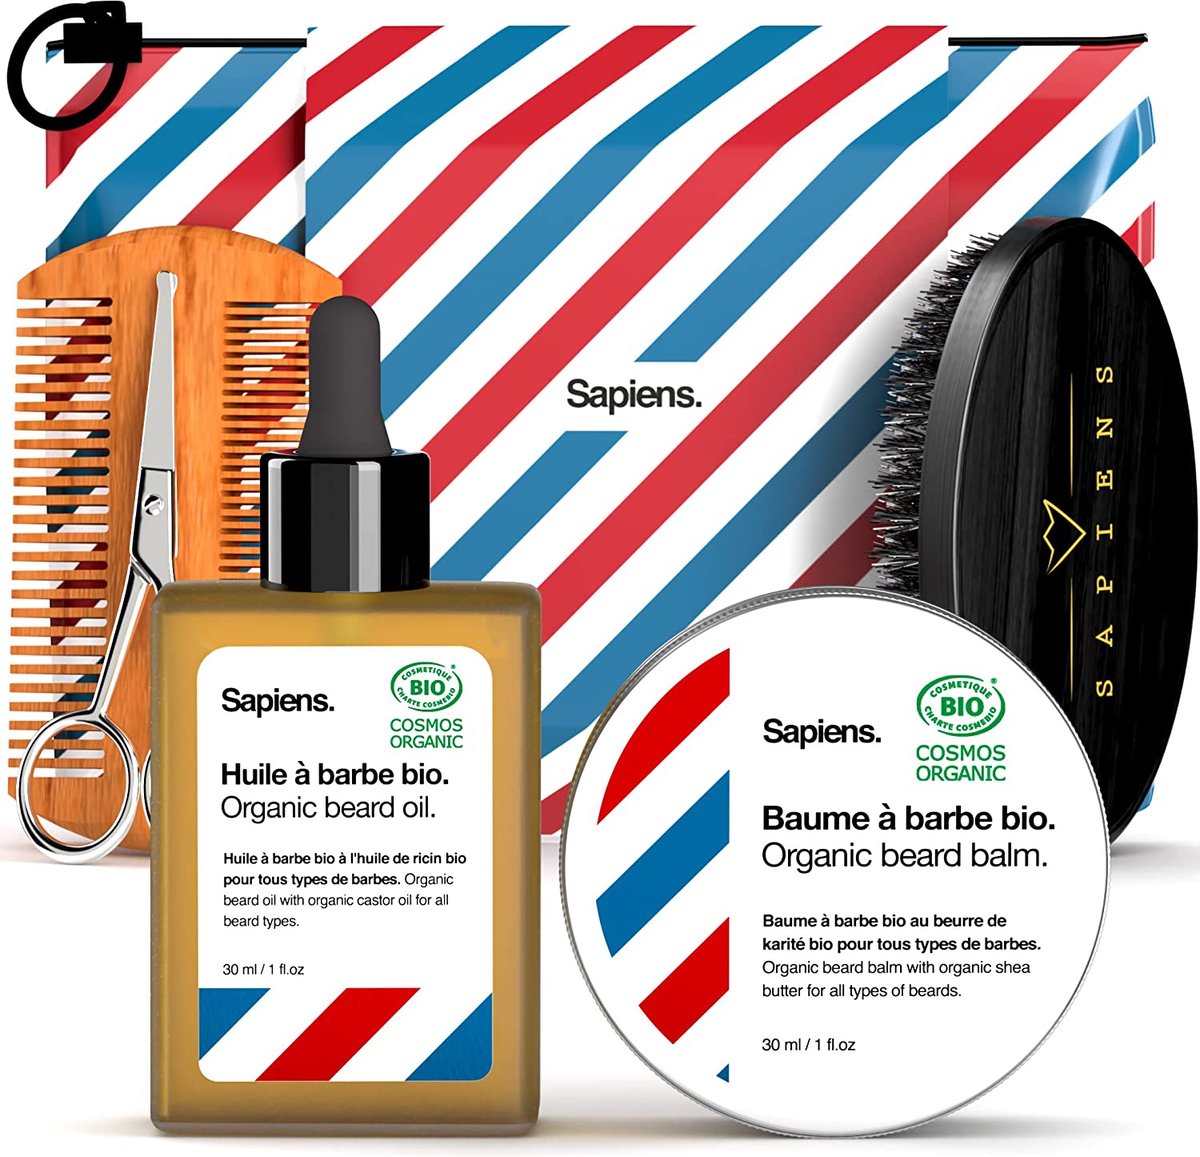 BORZMARKT - Sapiens Barbershop Mannen Baard Verzorgings Kit - Made in France - 100% Natuurlijke Biologische Baard Olie en Baard Balsem, Cosmos Organic/ECOCERT gecertificeerd - Baard kam en borstel, schaar, etui